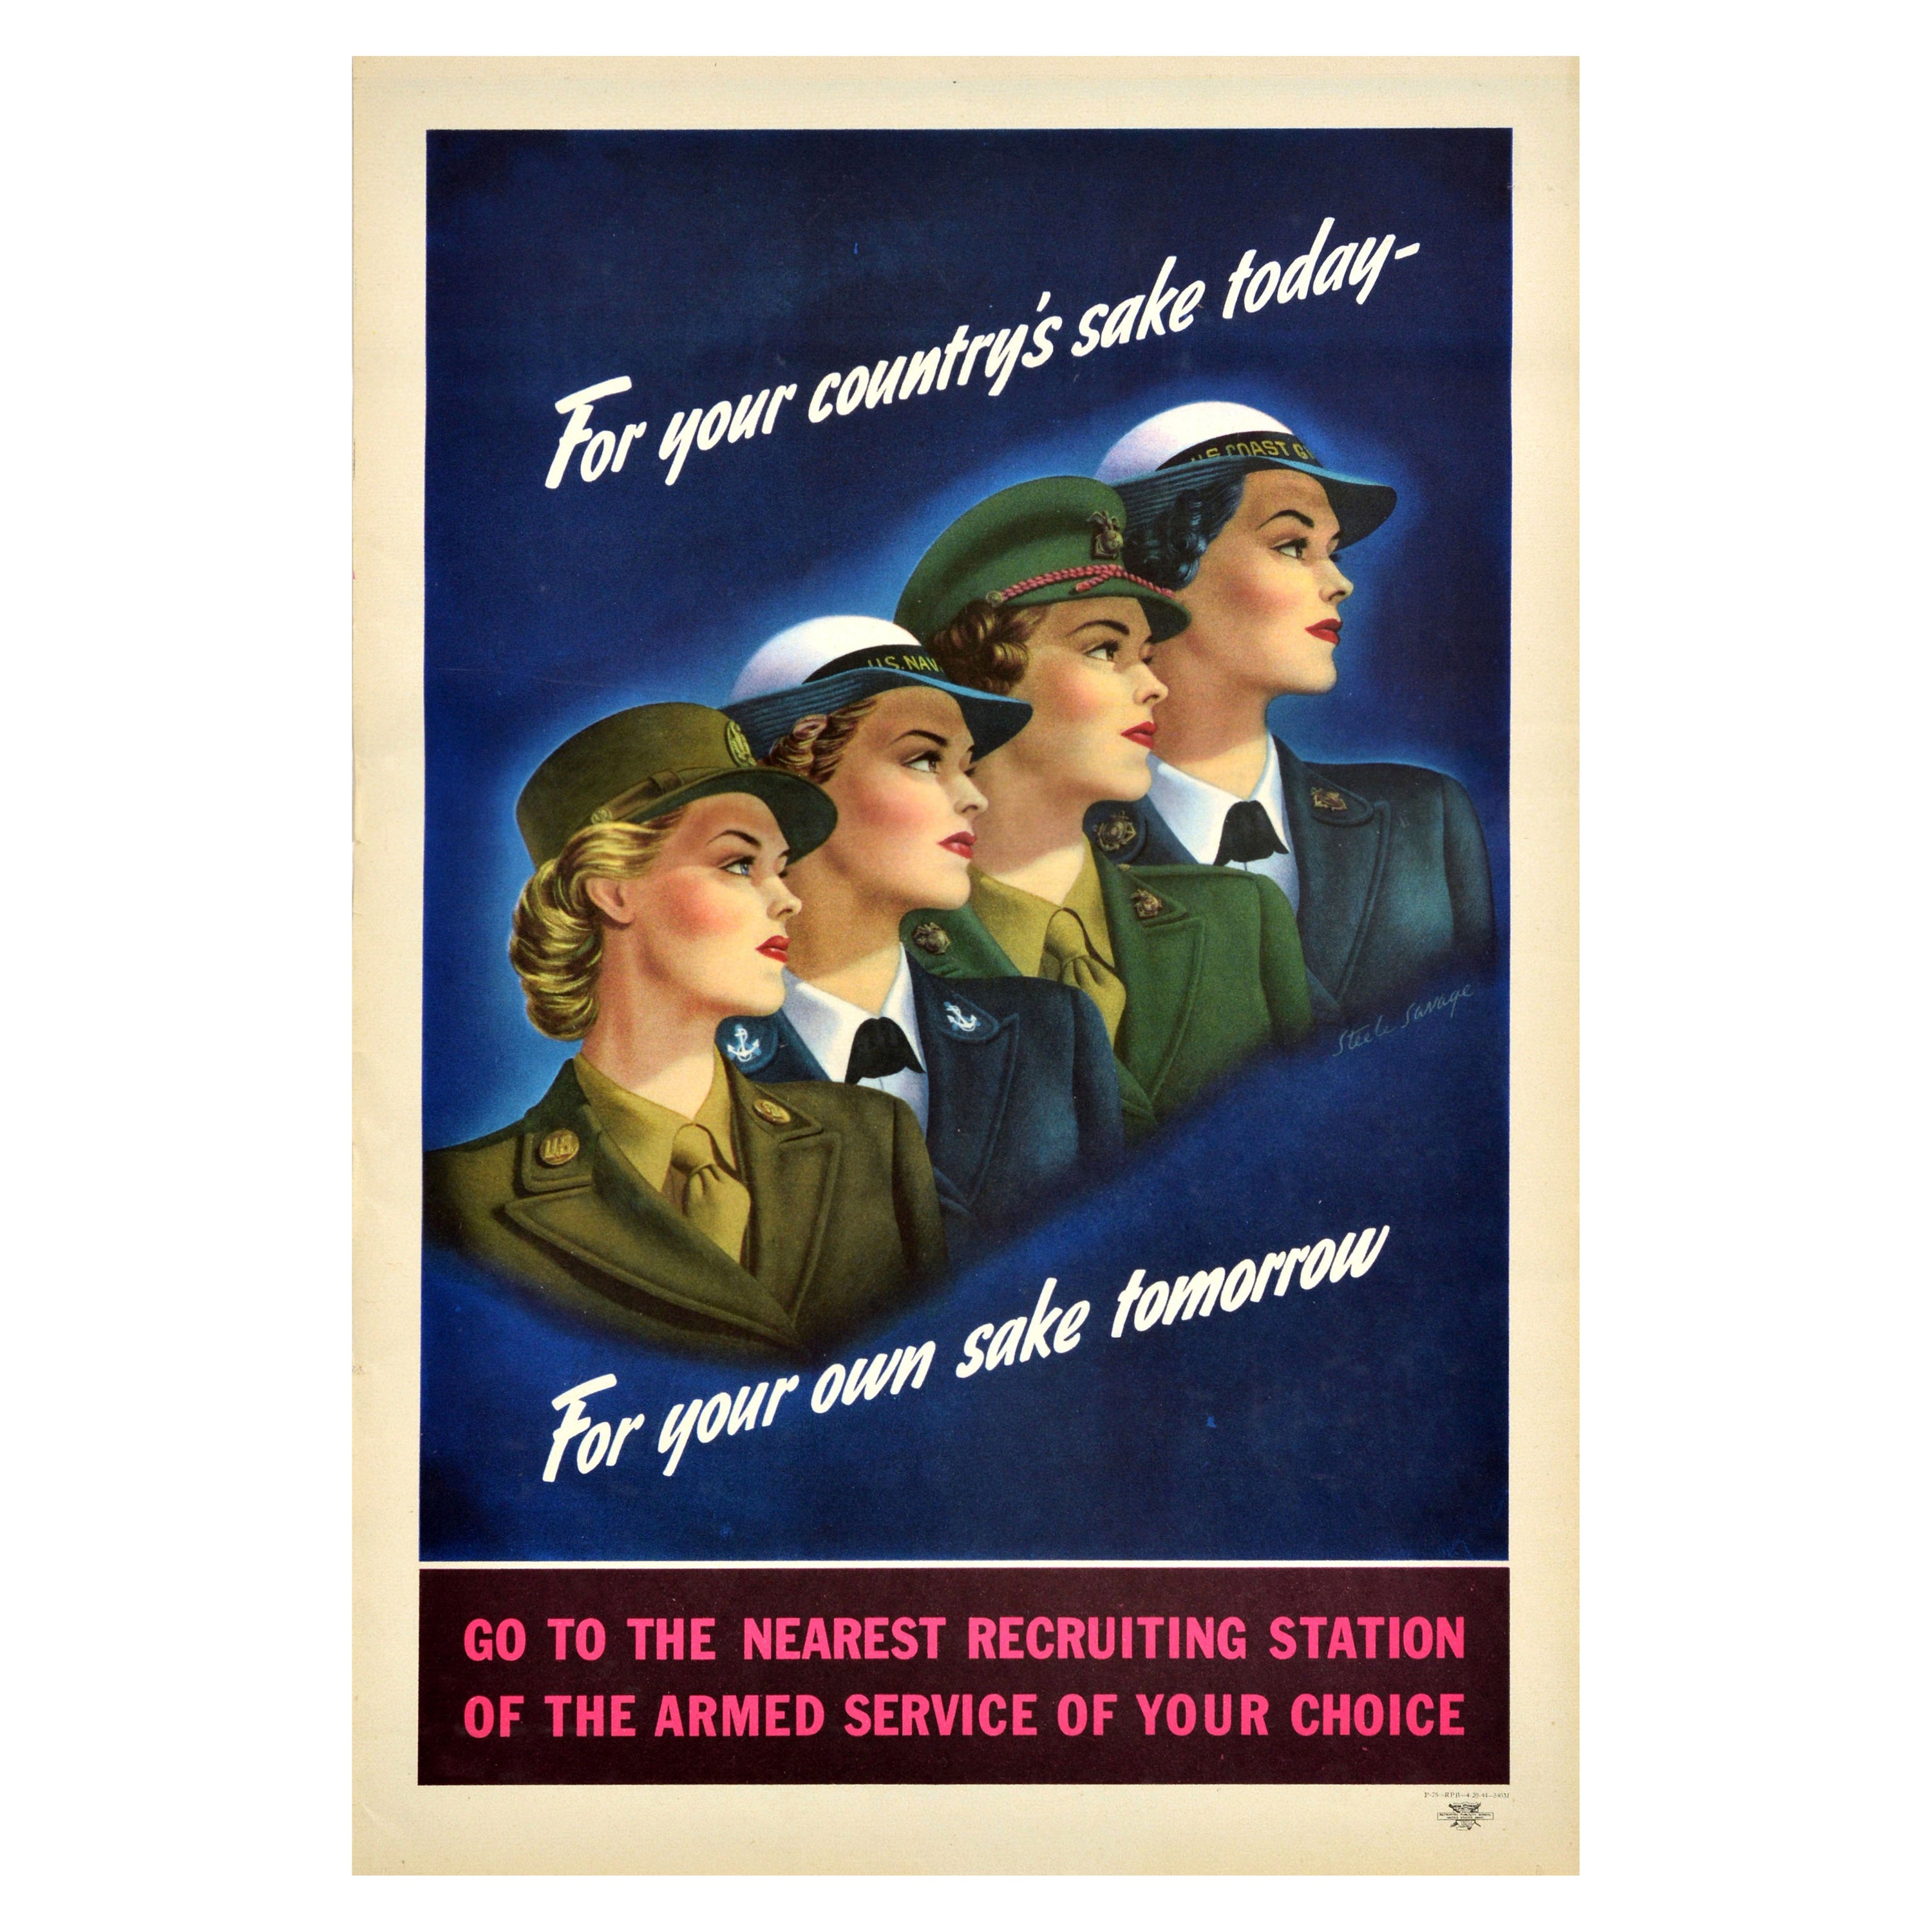 Affiche de recrutement américaine originale datant de la Seconde Guerre mondiale pour votre pays au goût du jour en vente